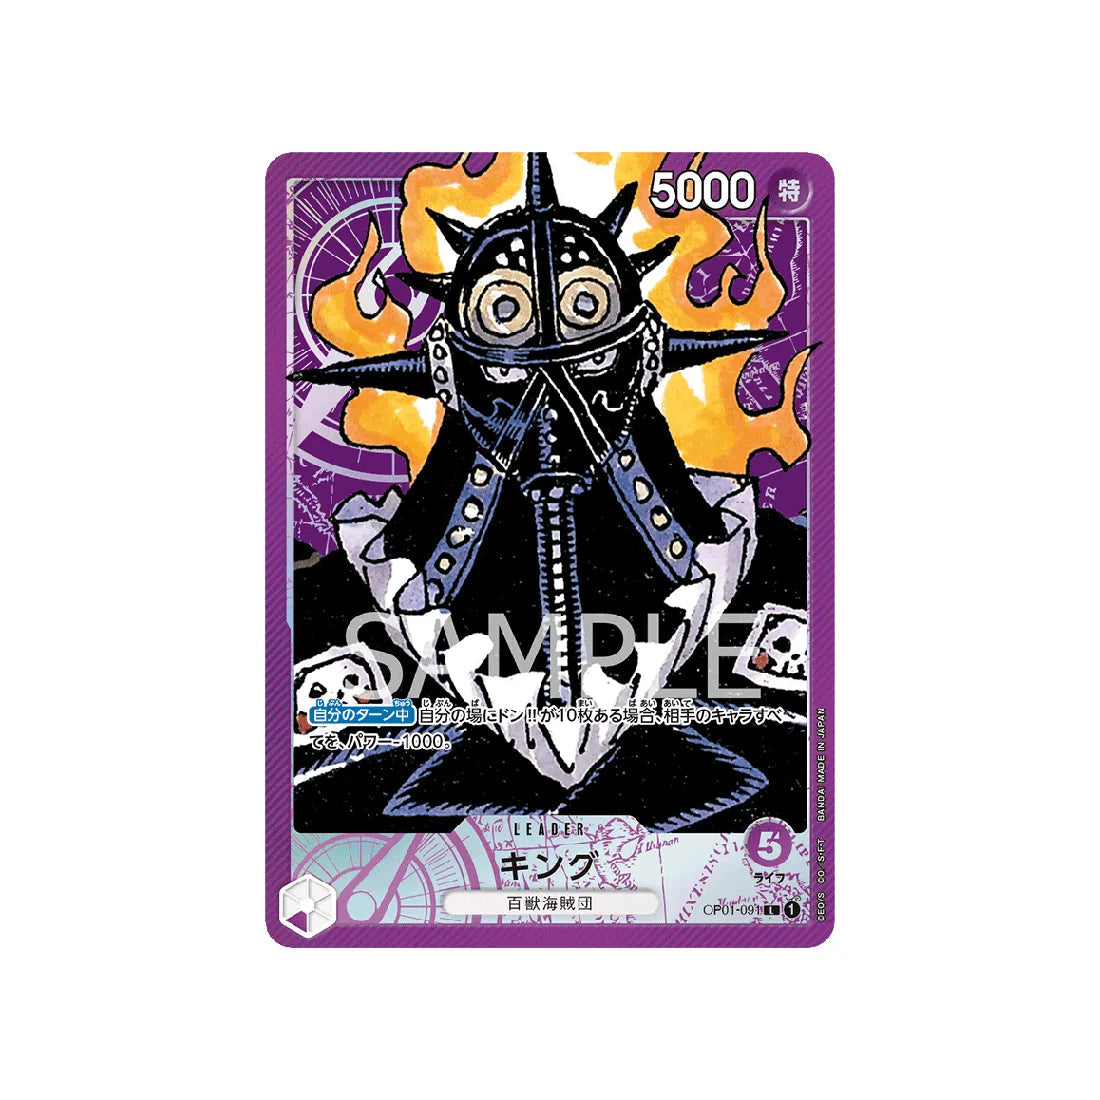 Carte One Piece Equipage Au Cent Bêtes ST04-003 : Kaido – Cartes Pokémon